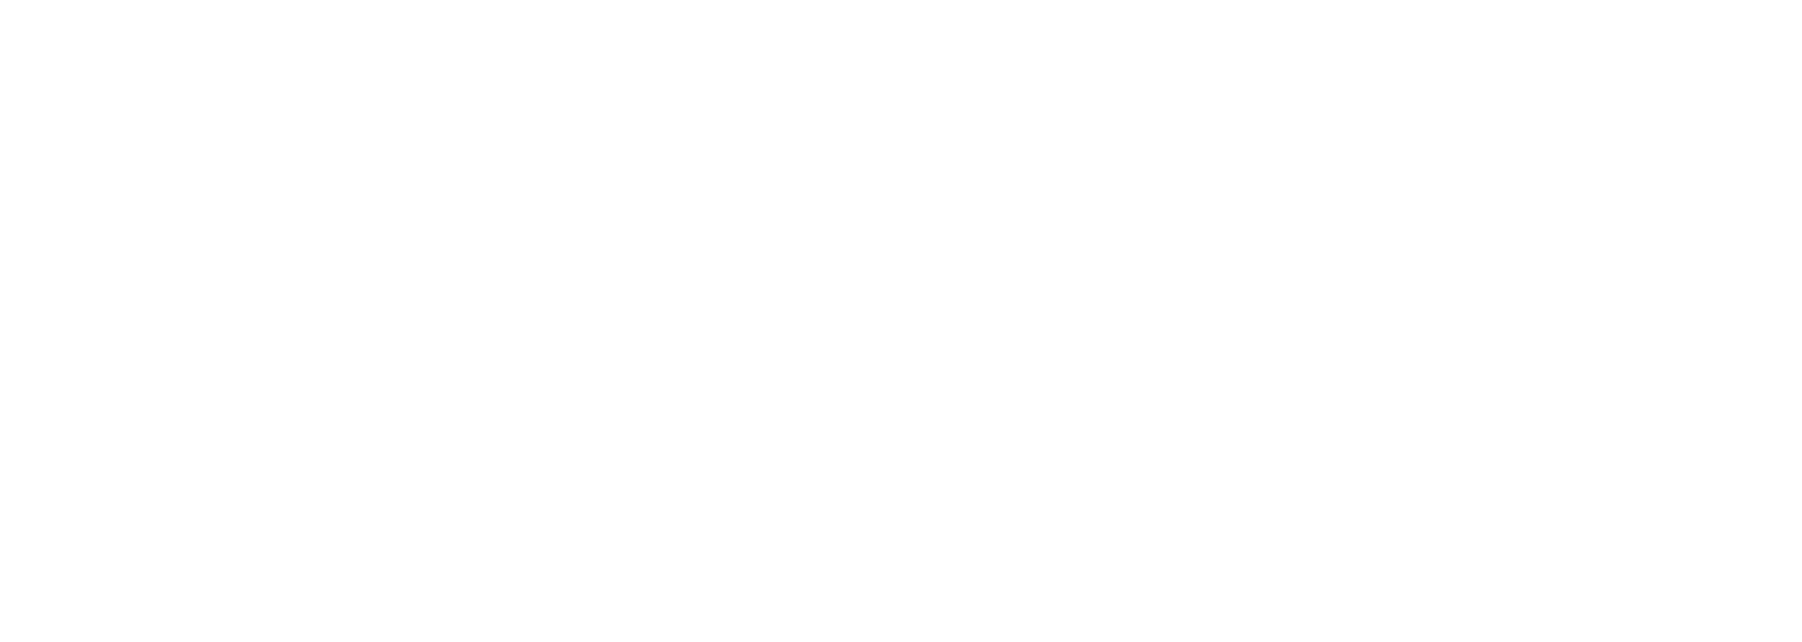 London Ontario Media Arts Association